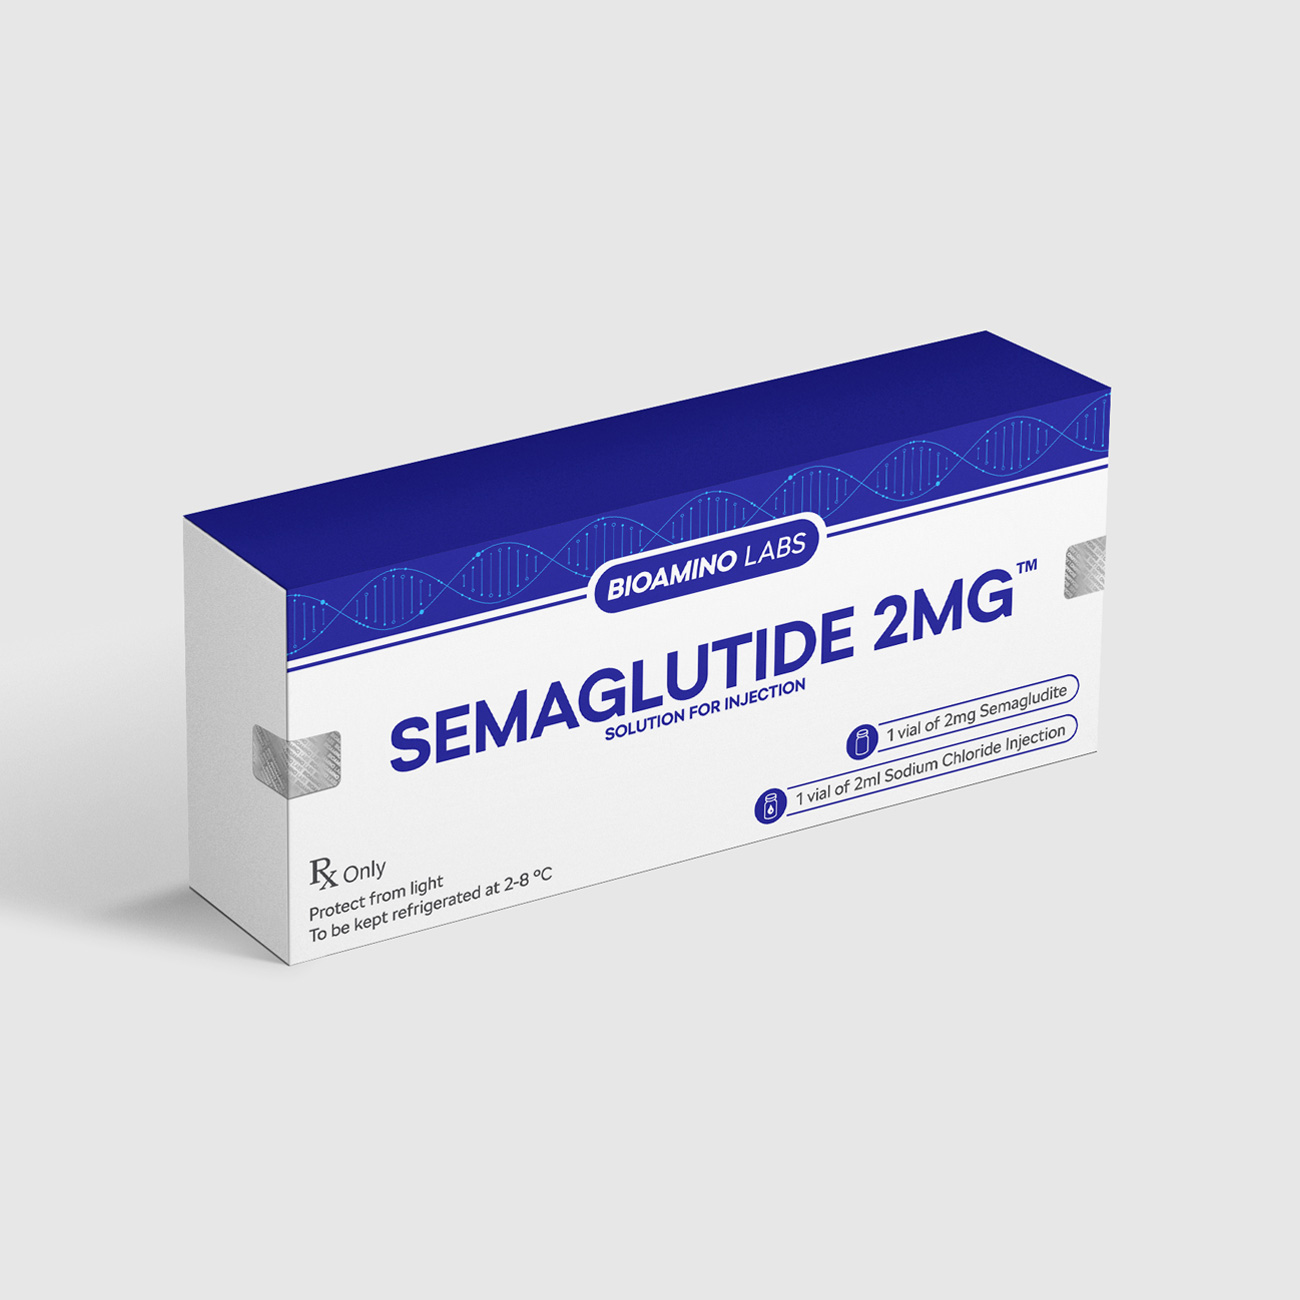 Semaglutyd (Semaglutide) 2 mg Bioamino